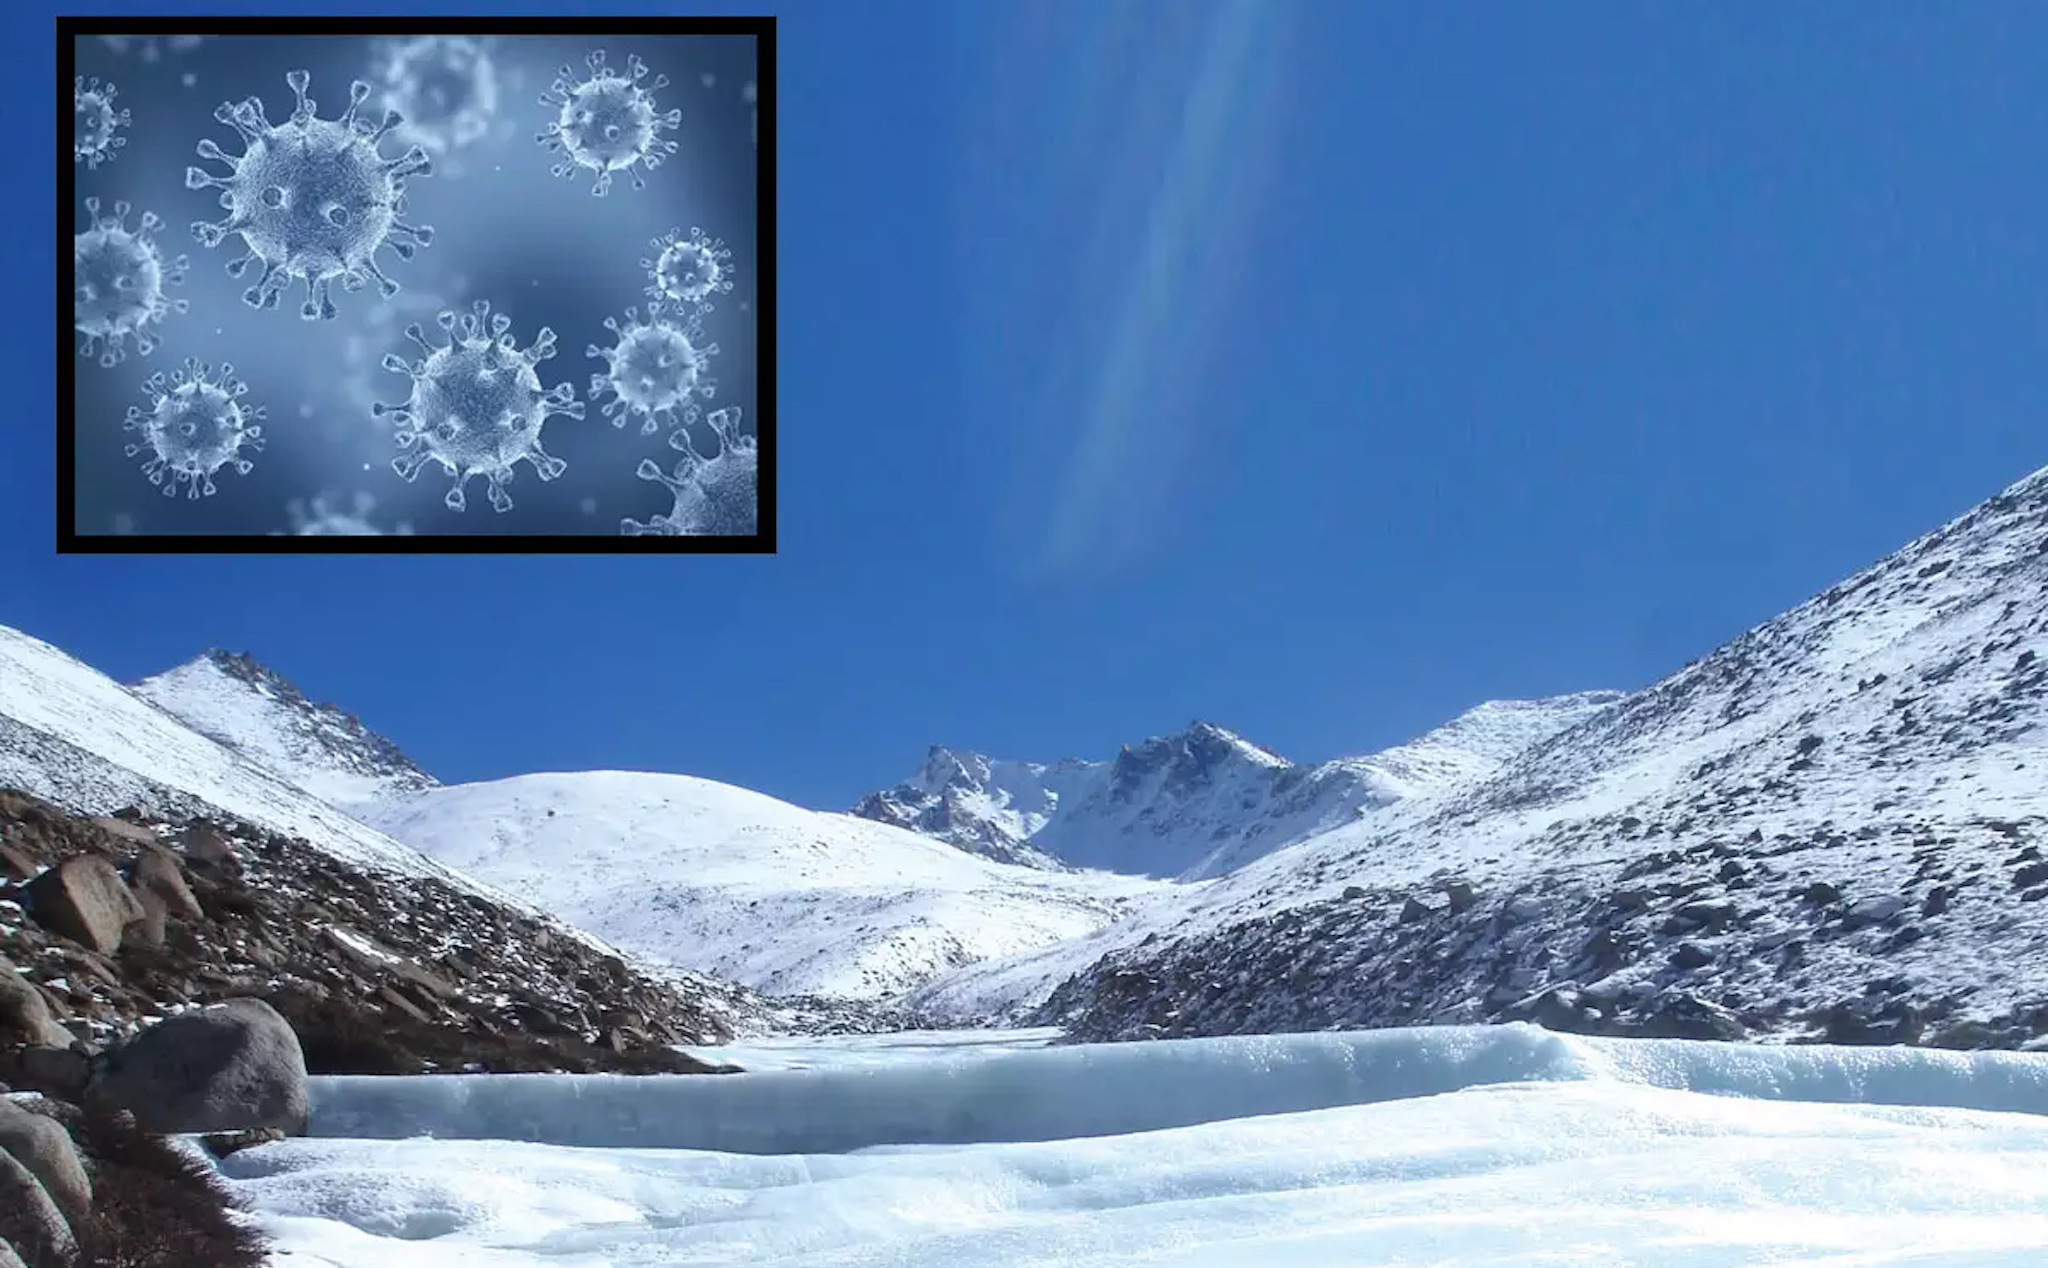 Phát hiện hơn 30 loại virus cổ đại trong một sông băng tại cao nguyên Tây Tạng, Trung Quốc